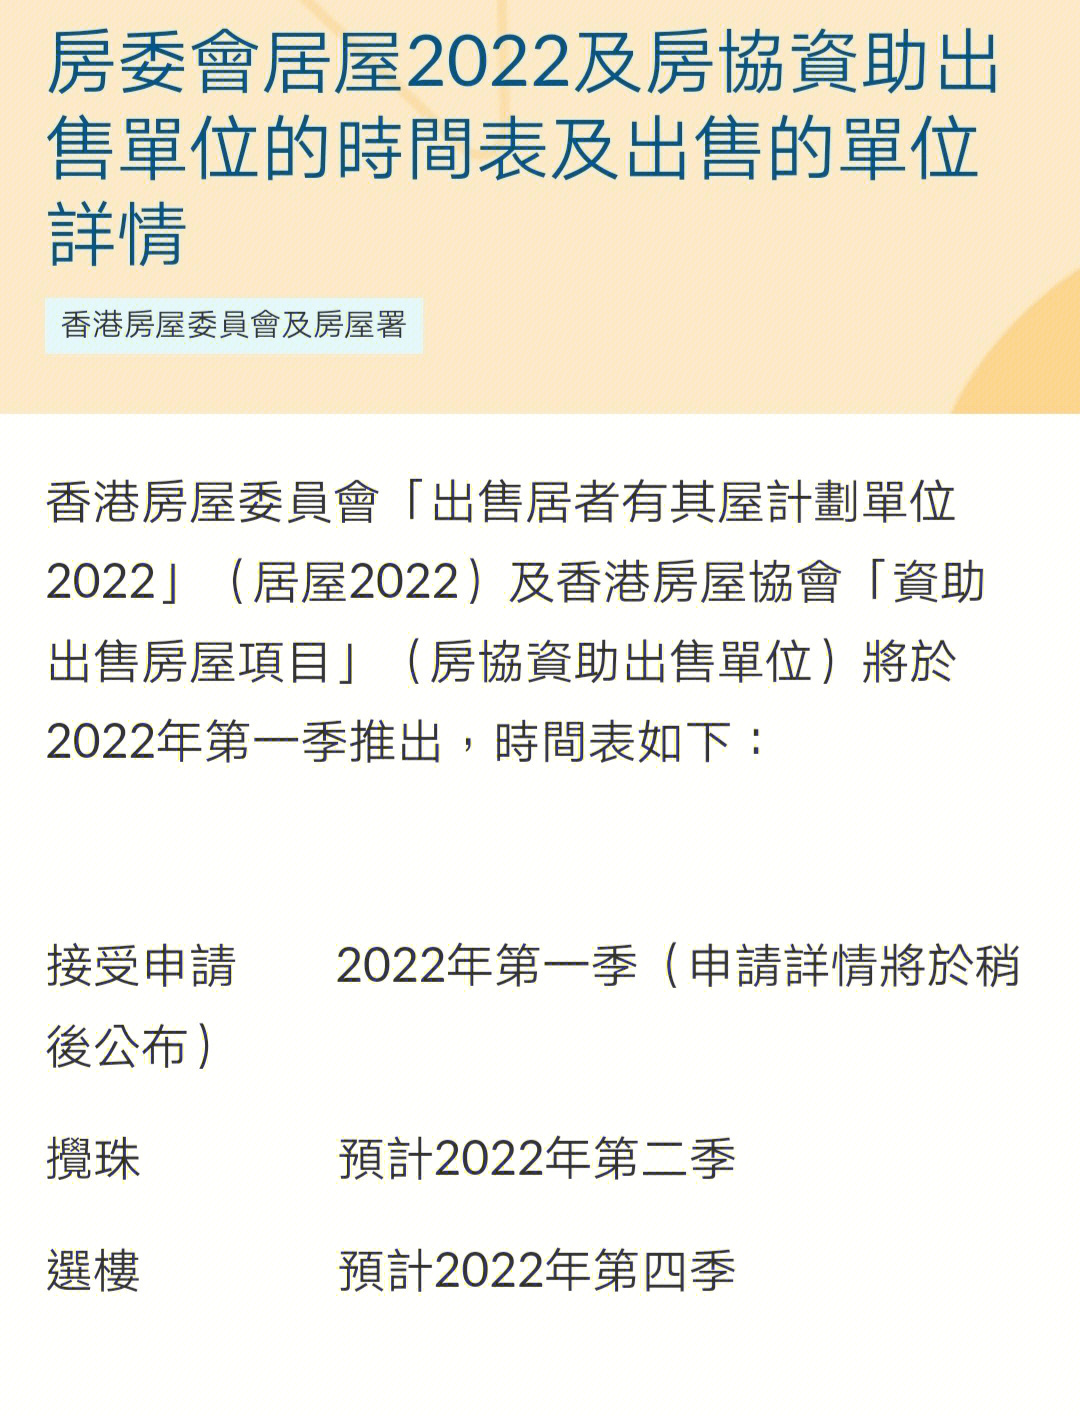 香港2022居屋仅做参考详见房屋署官网